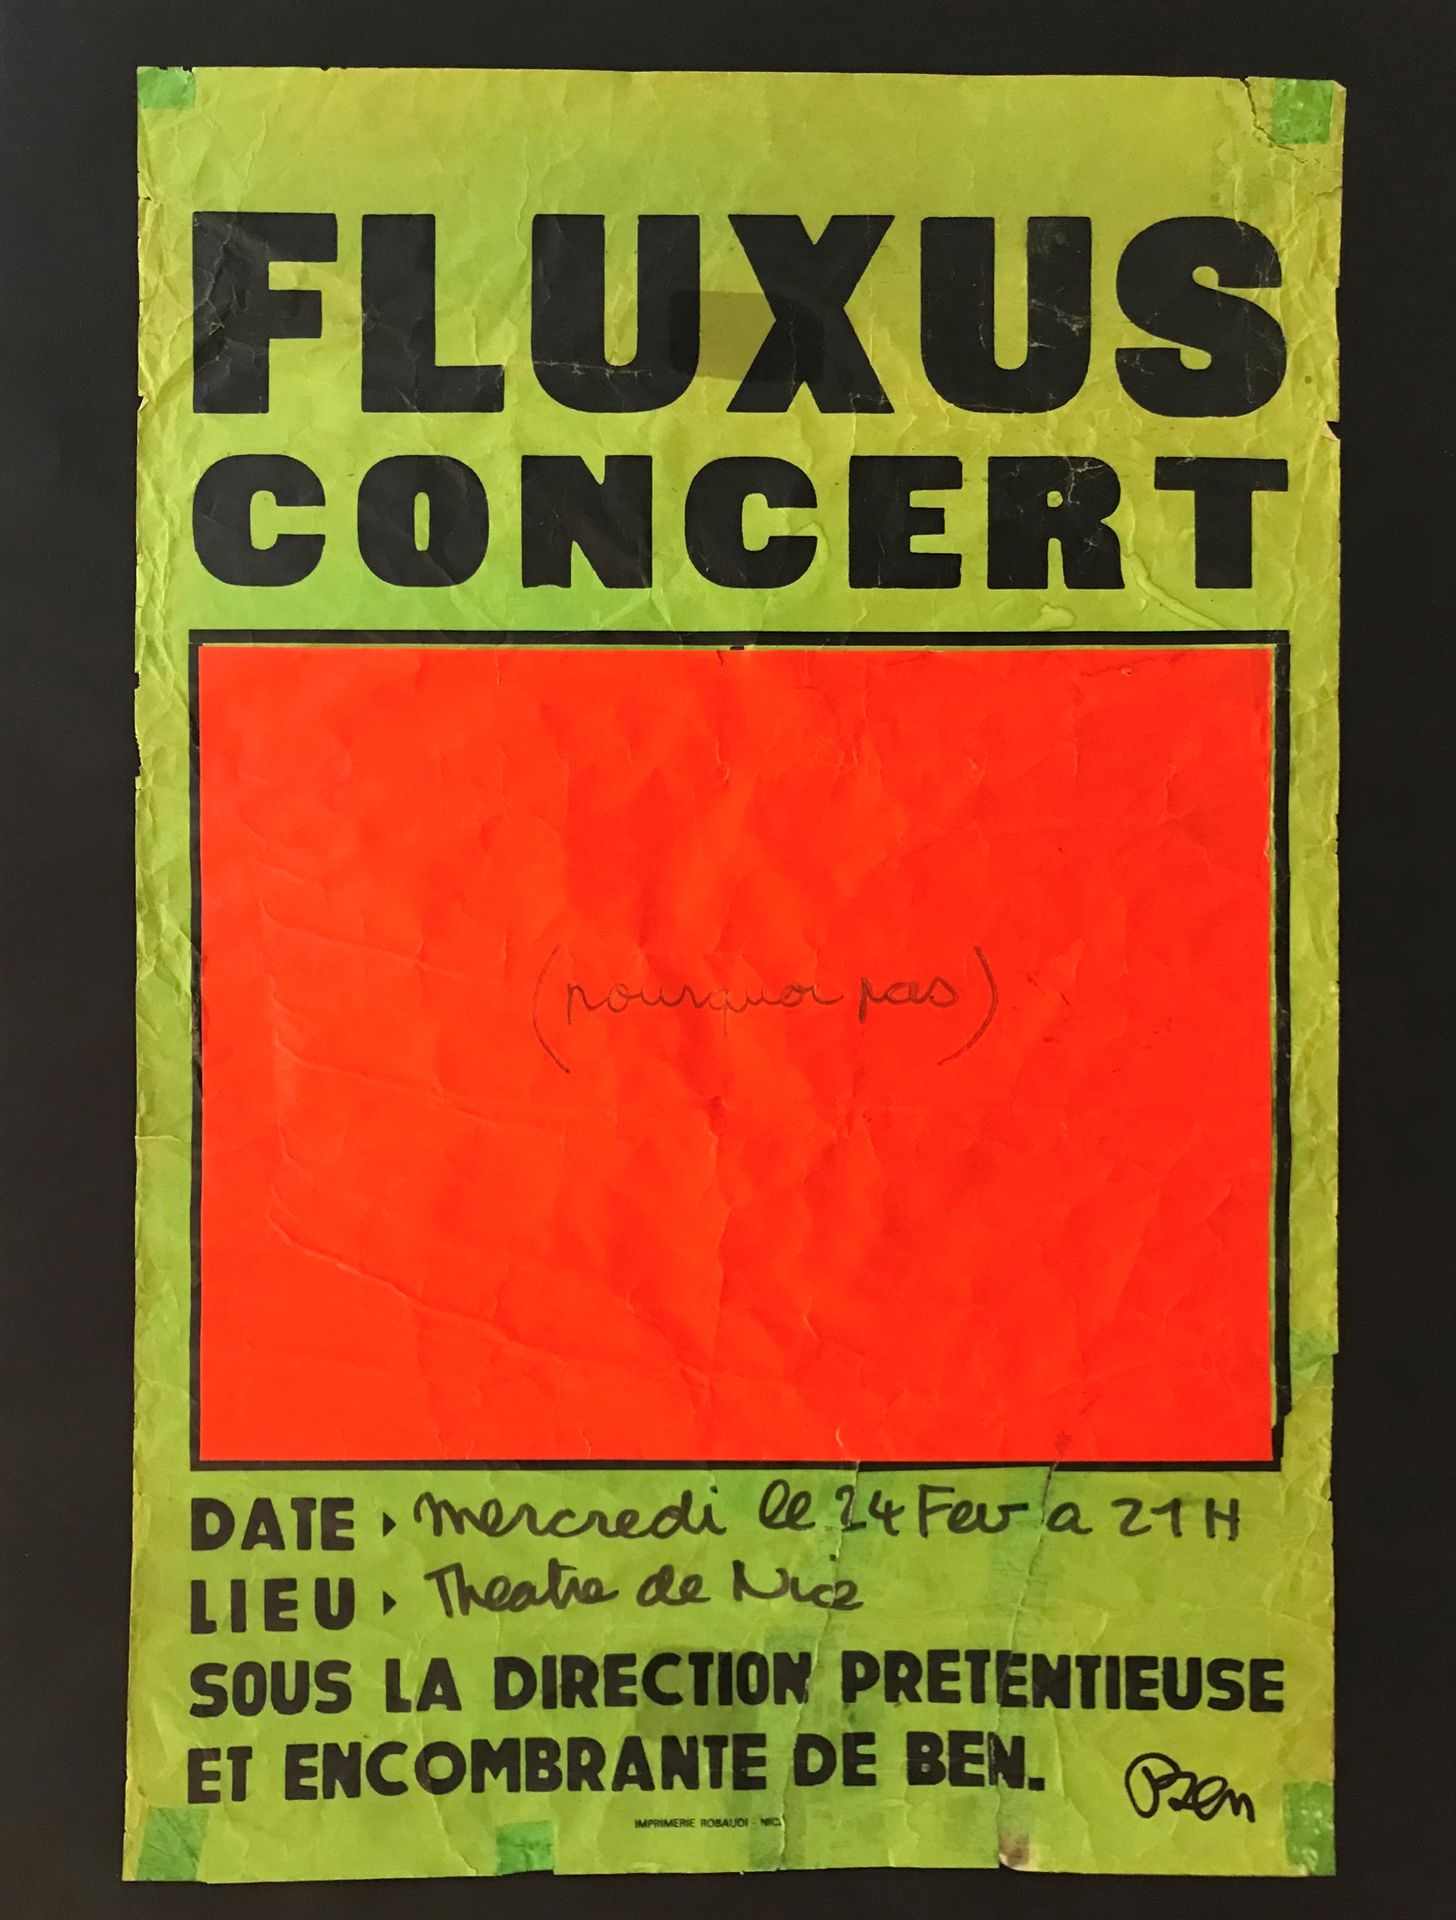 BEN VAUTIER (1935) Pourquoi pas
Affiche de rue annonçant un concert Fluxus le 24&hellip;